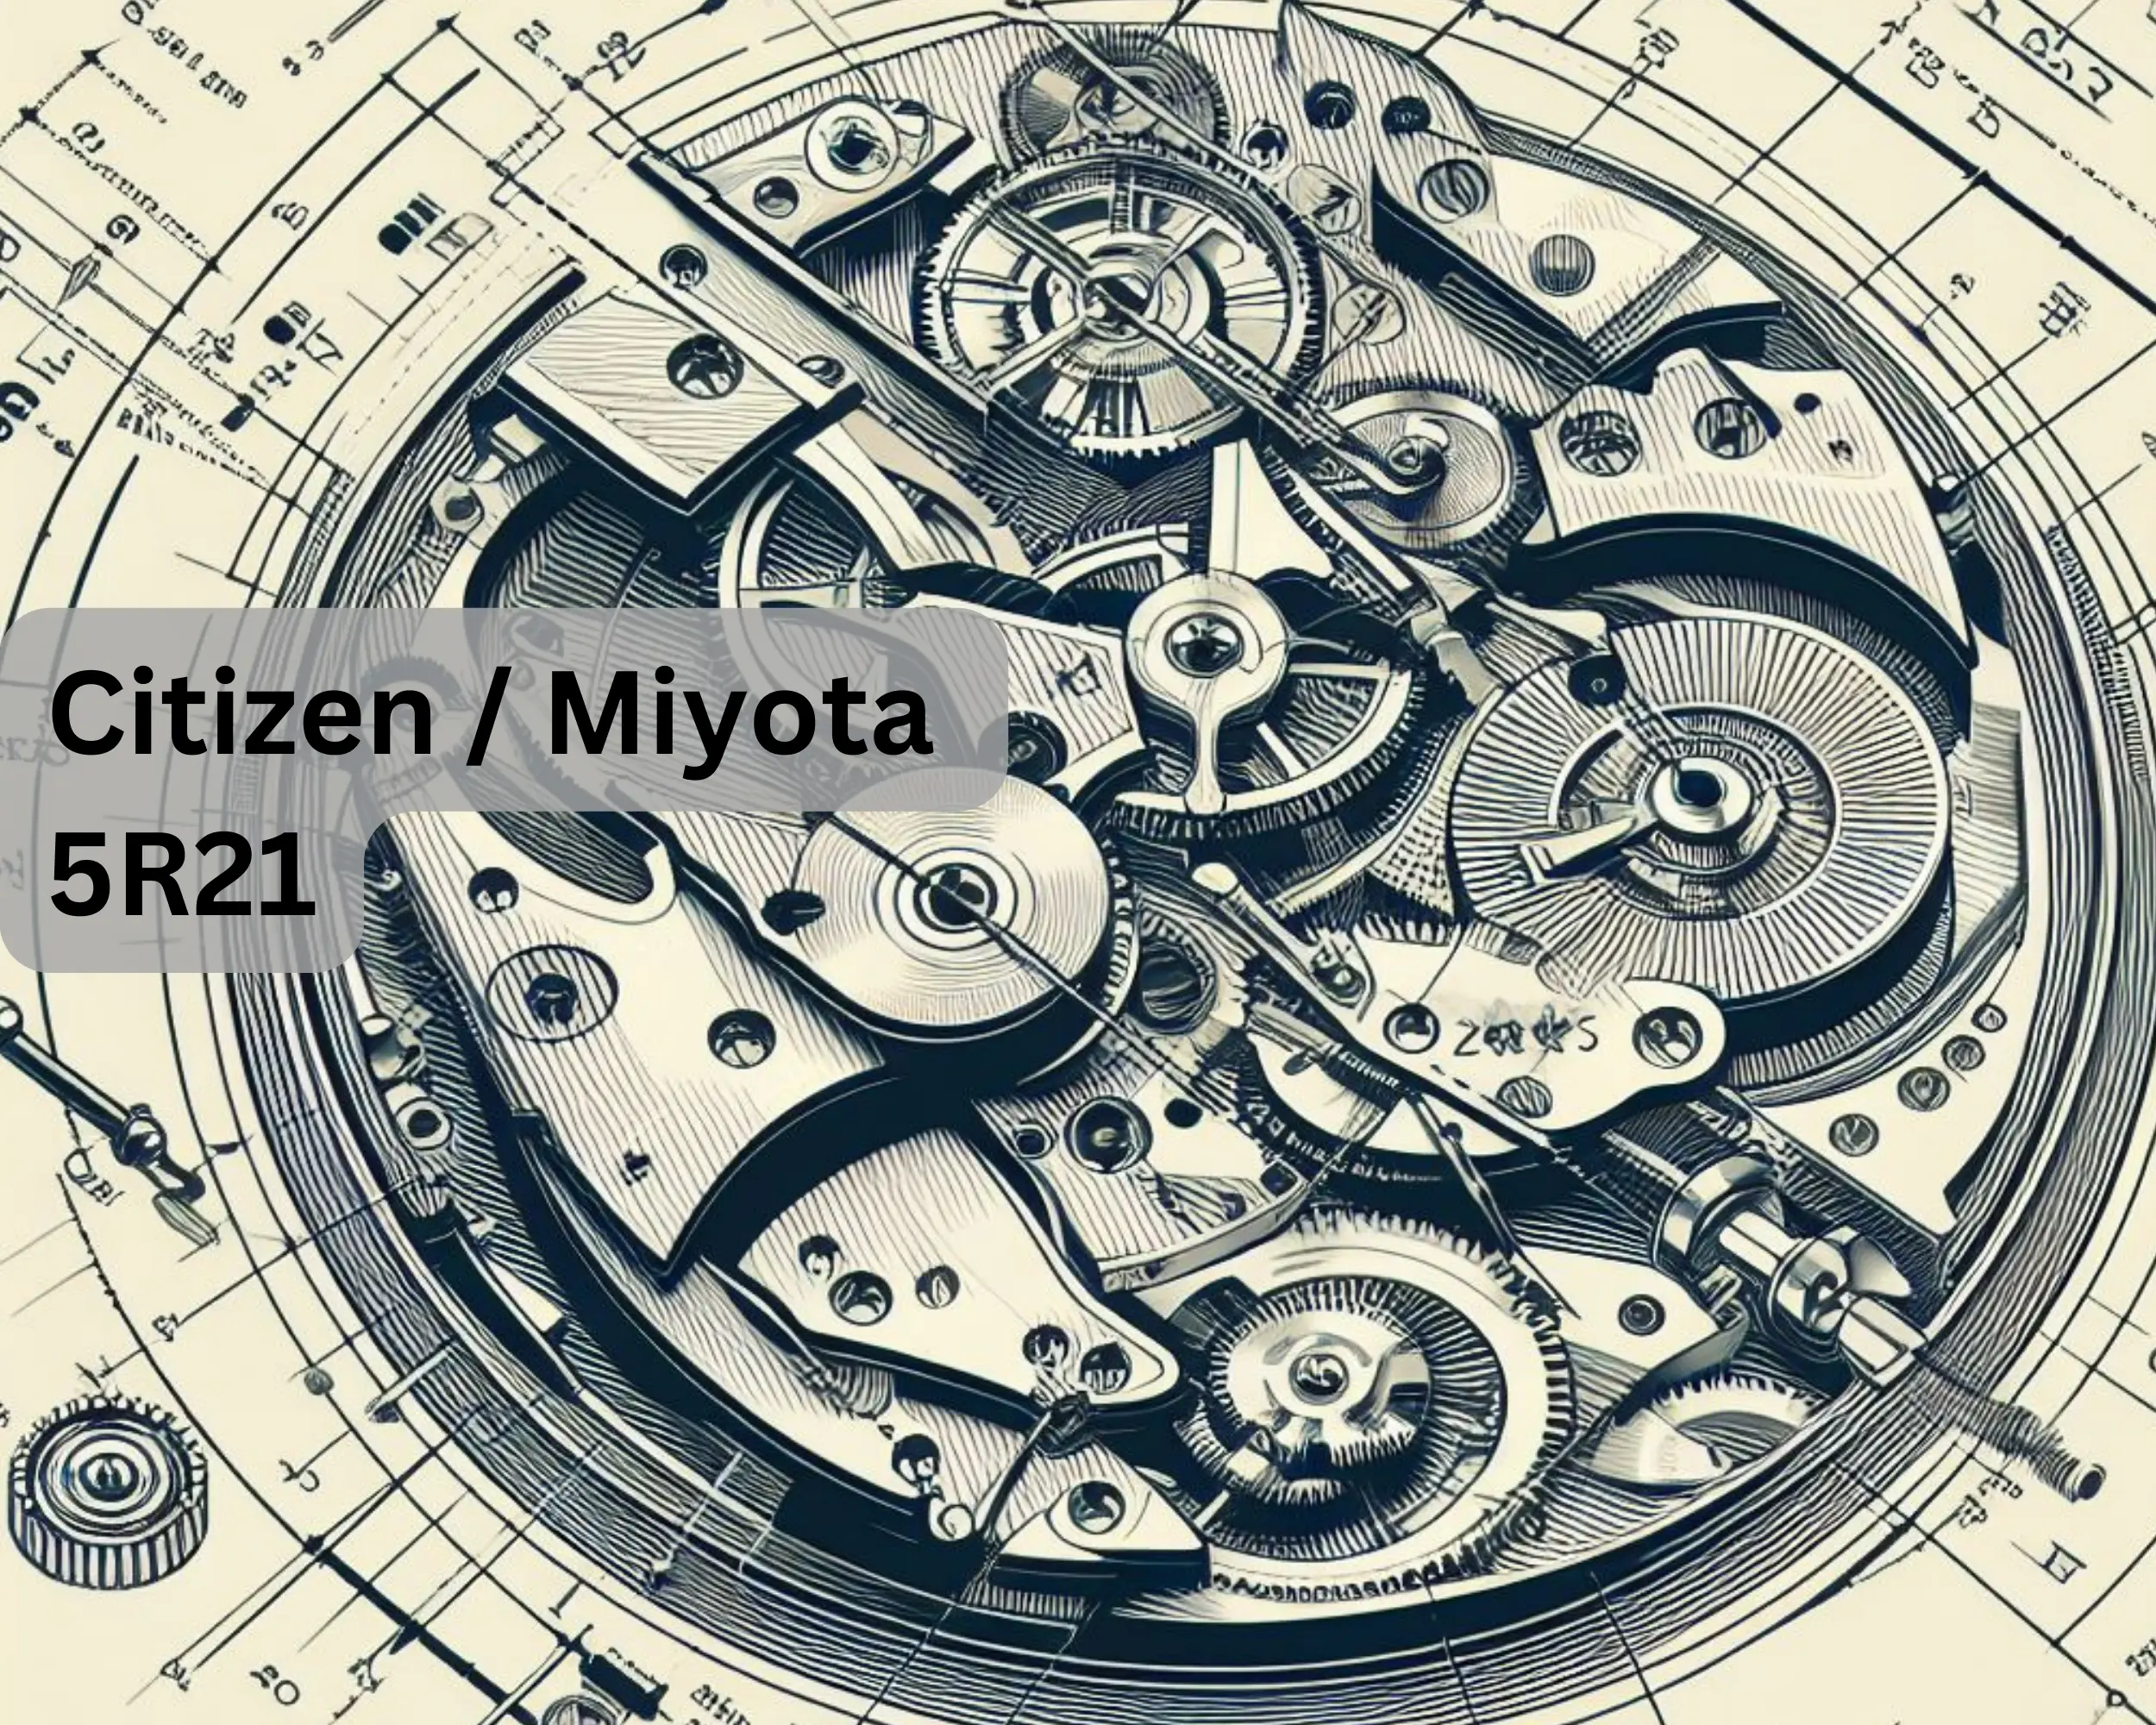 Das Citizen / Miyota 5R21 Quarzwerk mit zwei Zeigern